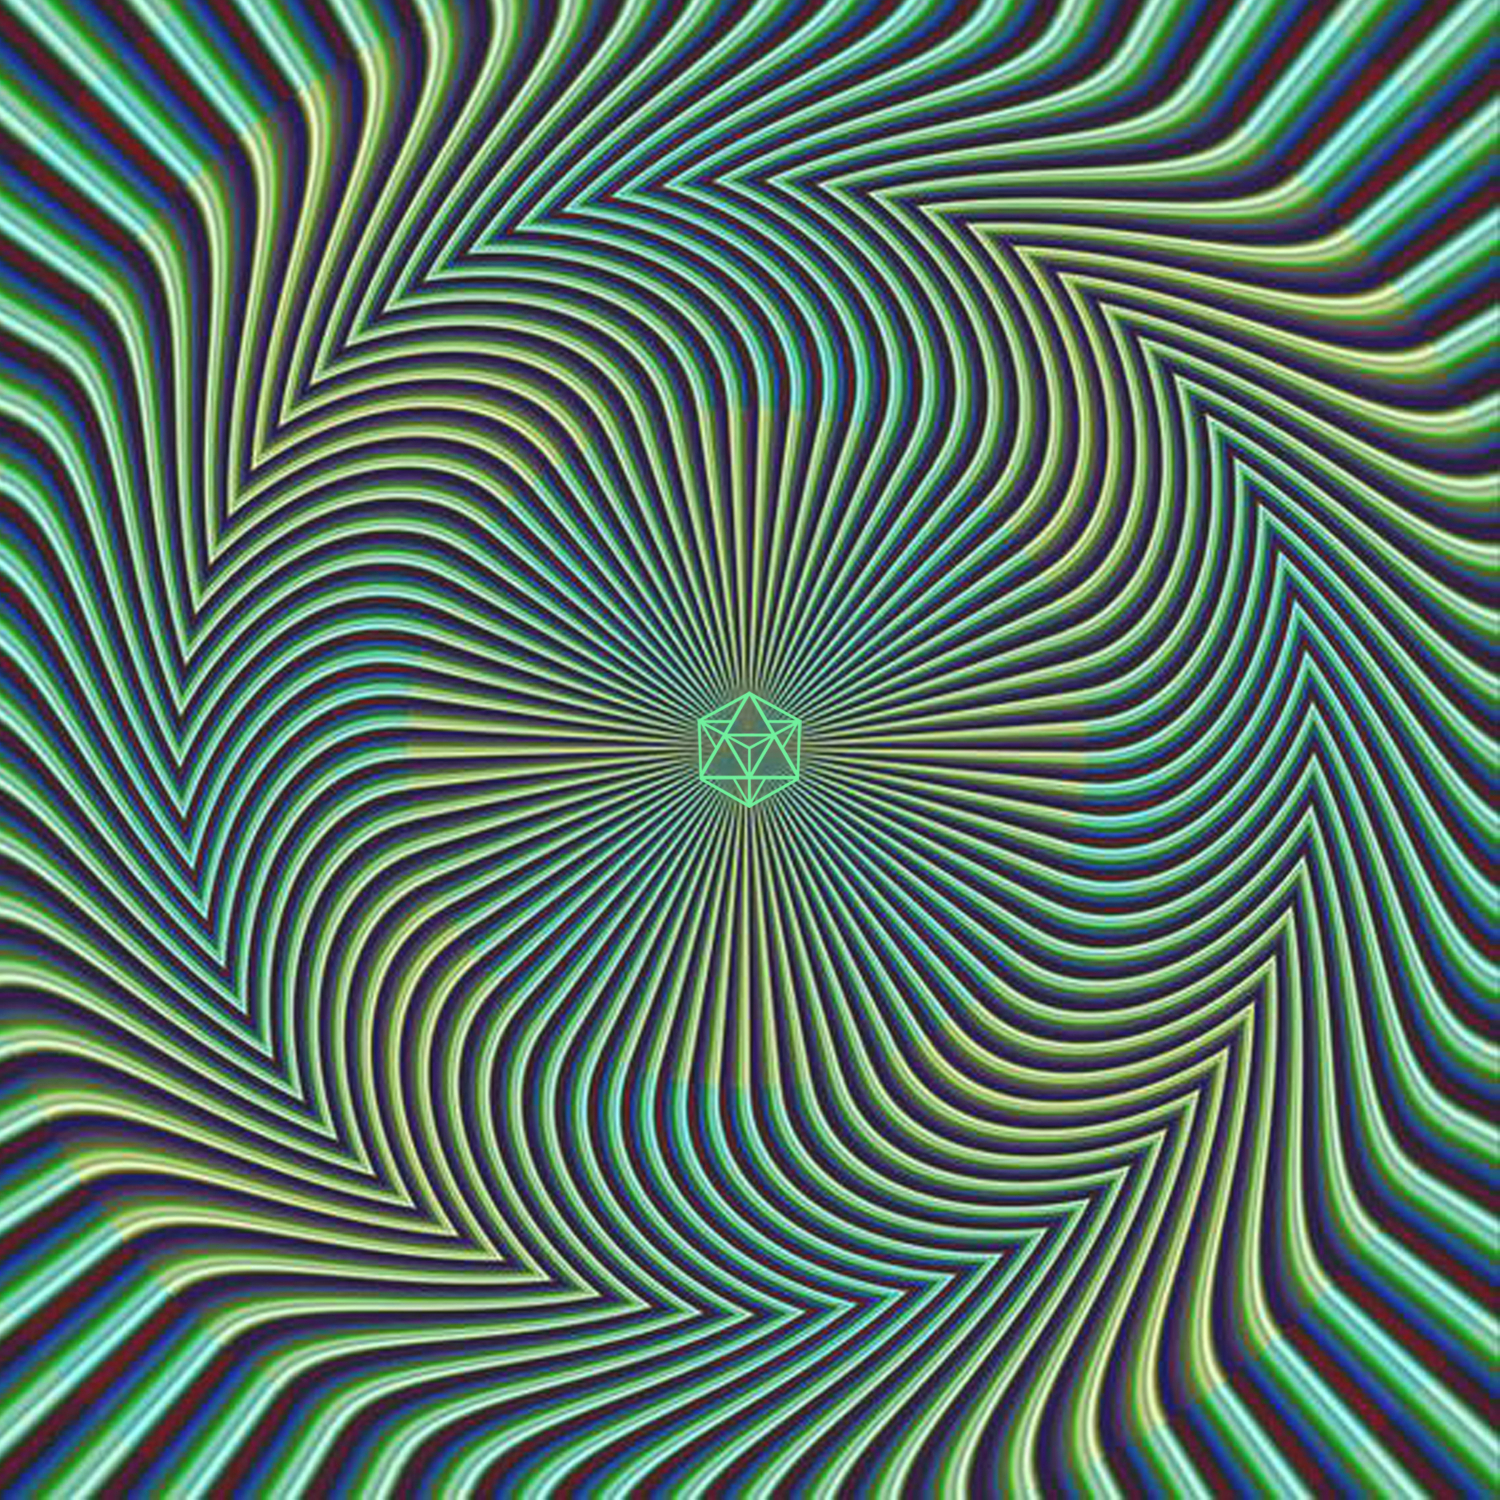 Движущаяся картина 3. «Оптические иллюзии» (Автор Джейкобс ПЭТ). Эффект Рубичева-хольтона. Рэндольф психоделические иллюзии. Зрительные иллюзии.